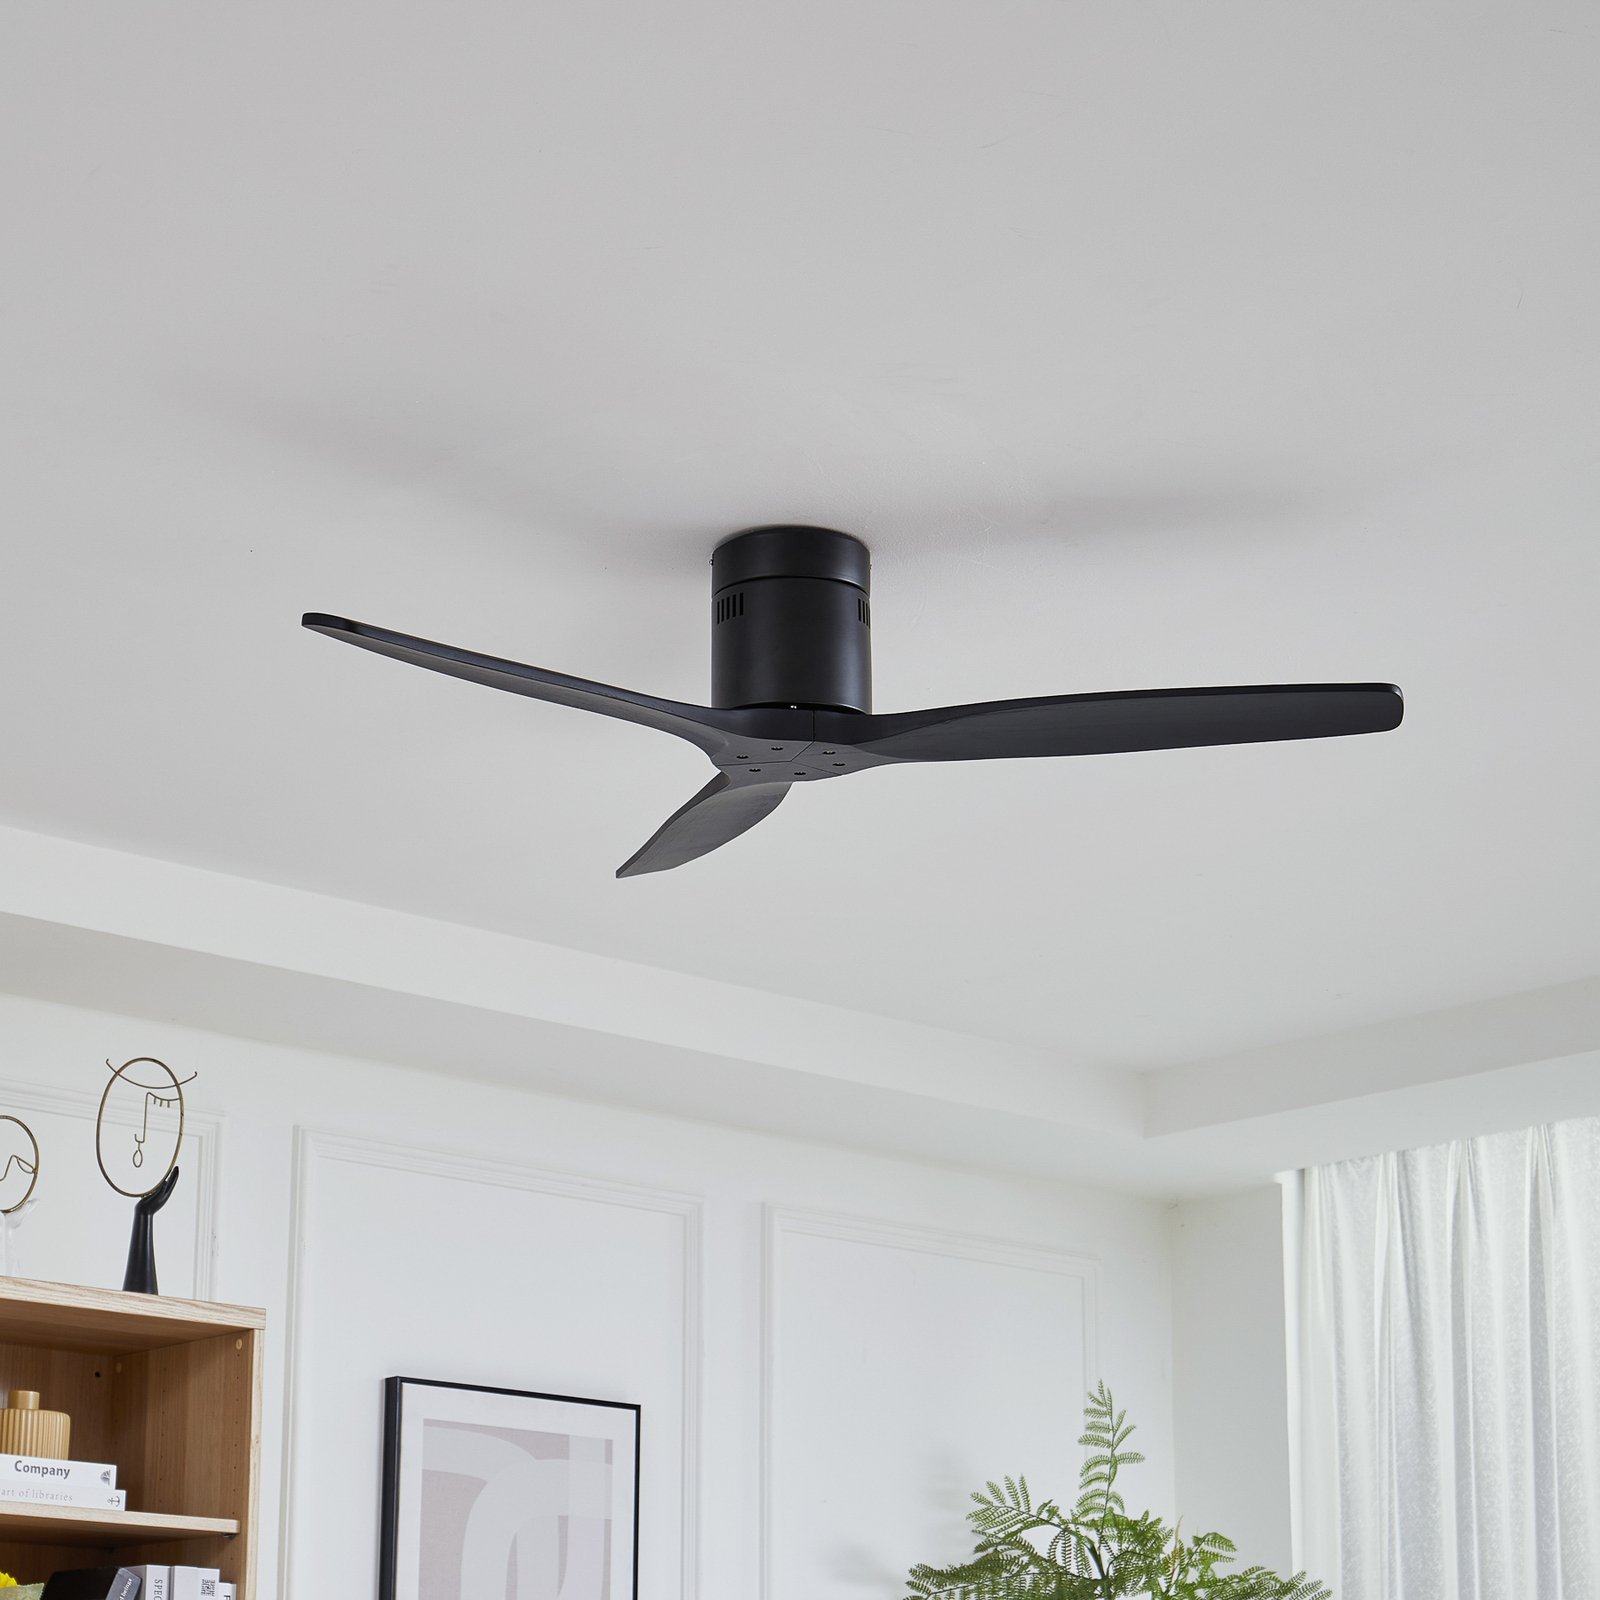 Lucande ceiling fan Vindur, black, DC, quiet, 132 cm